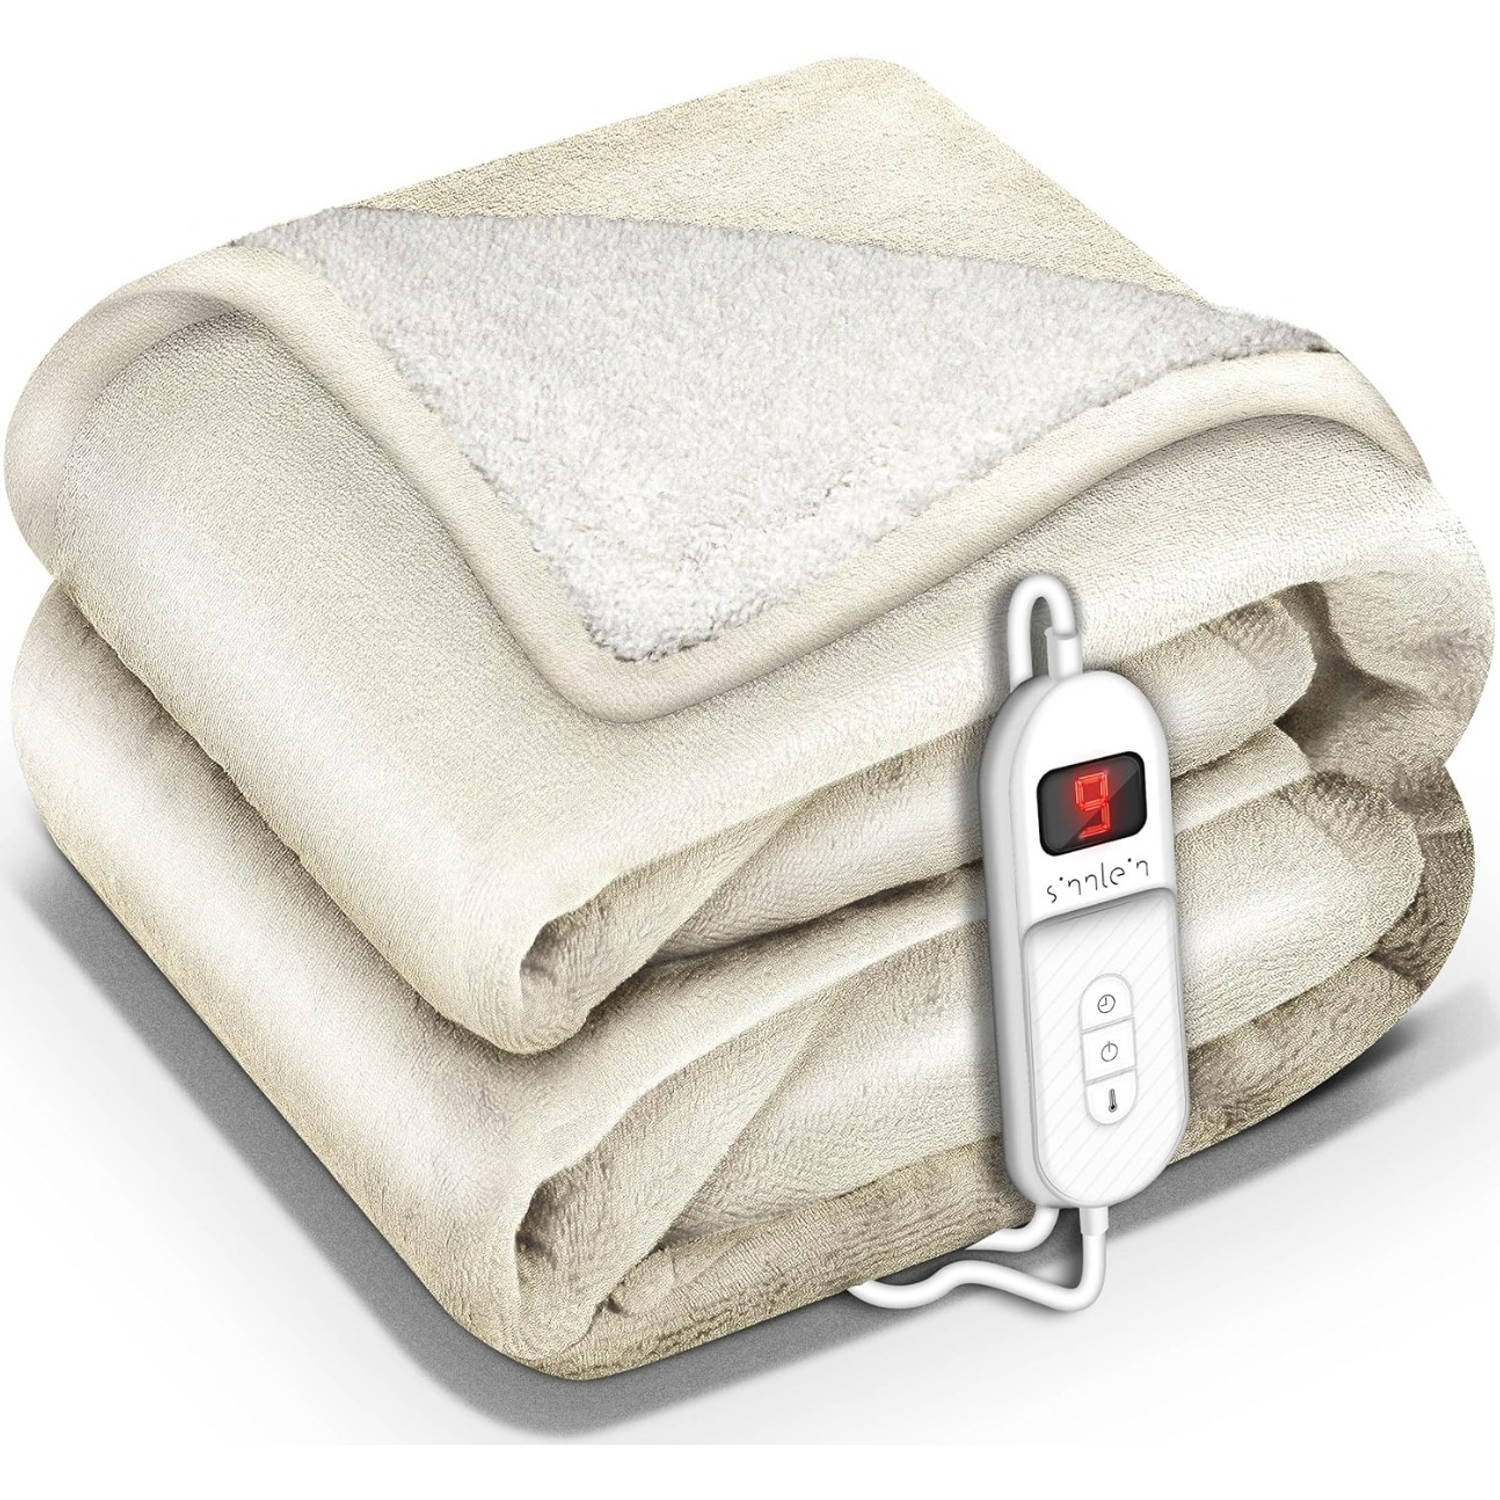 Sinnlein- Elektrische deken met automatische uitschakeling, beige, 160x120 cm, warmtedeken met 9 temperatuurniveaus, knuffeldeken, wasbaar